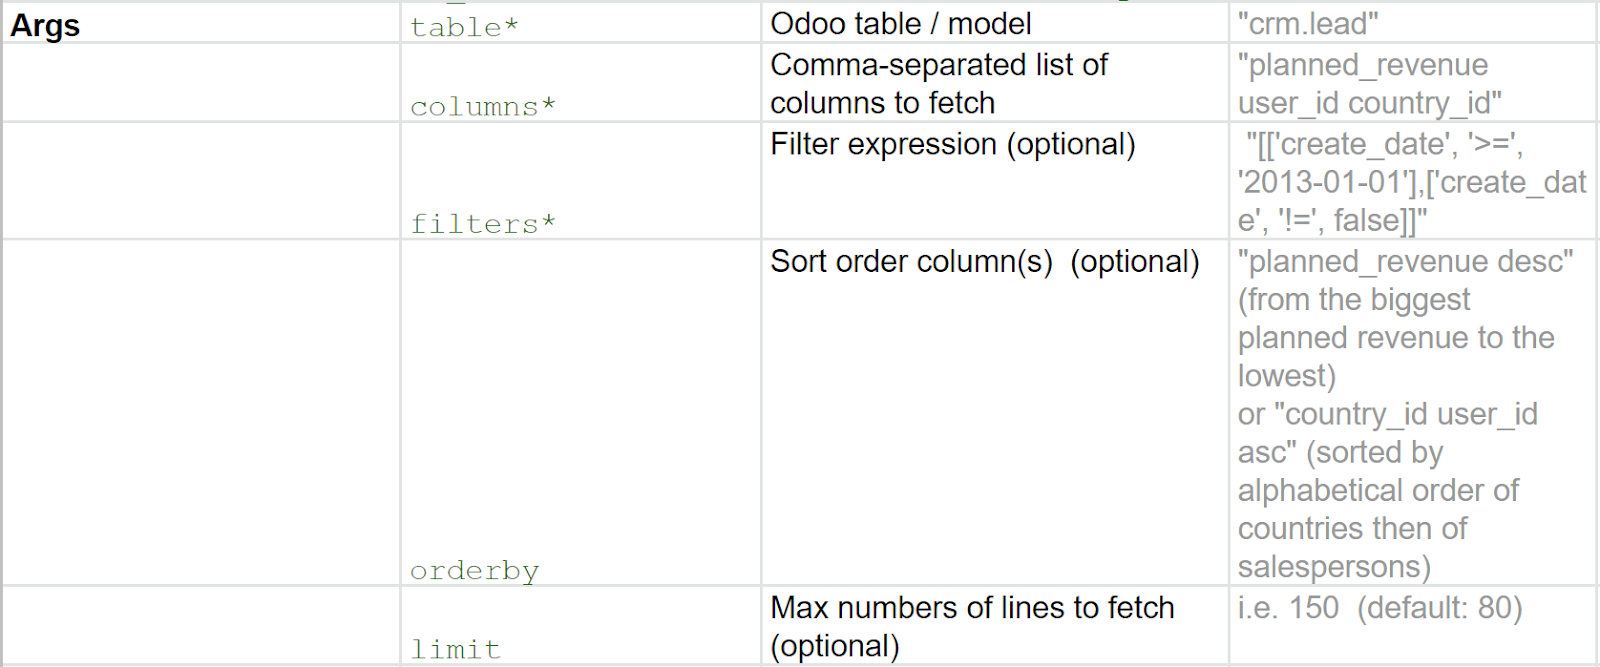 Tabel cu exemple de argumente de utilizat în Odoo